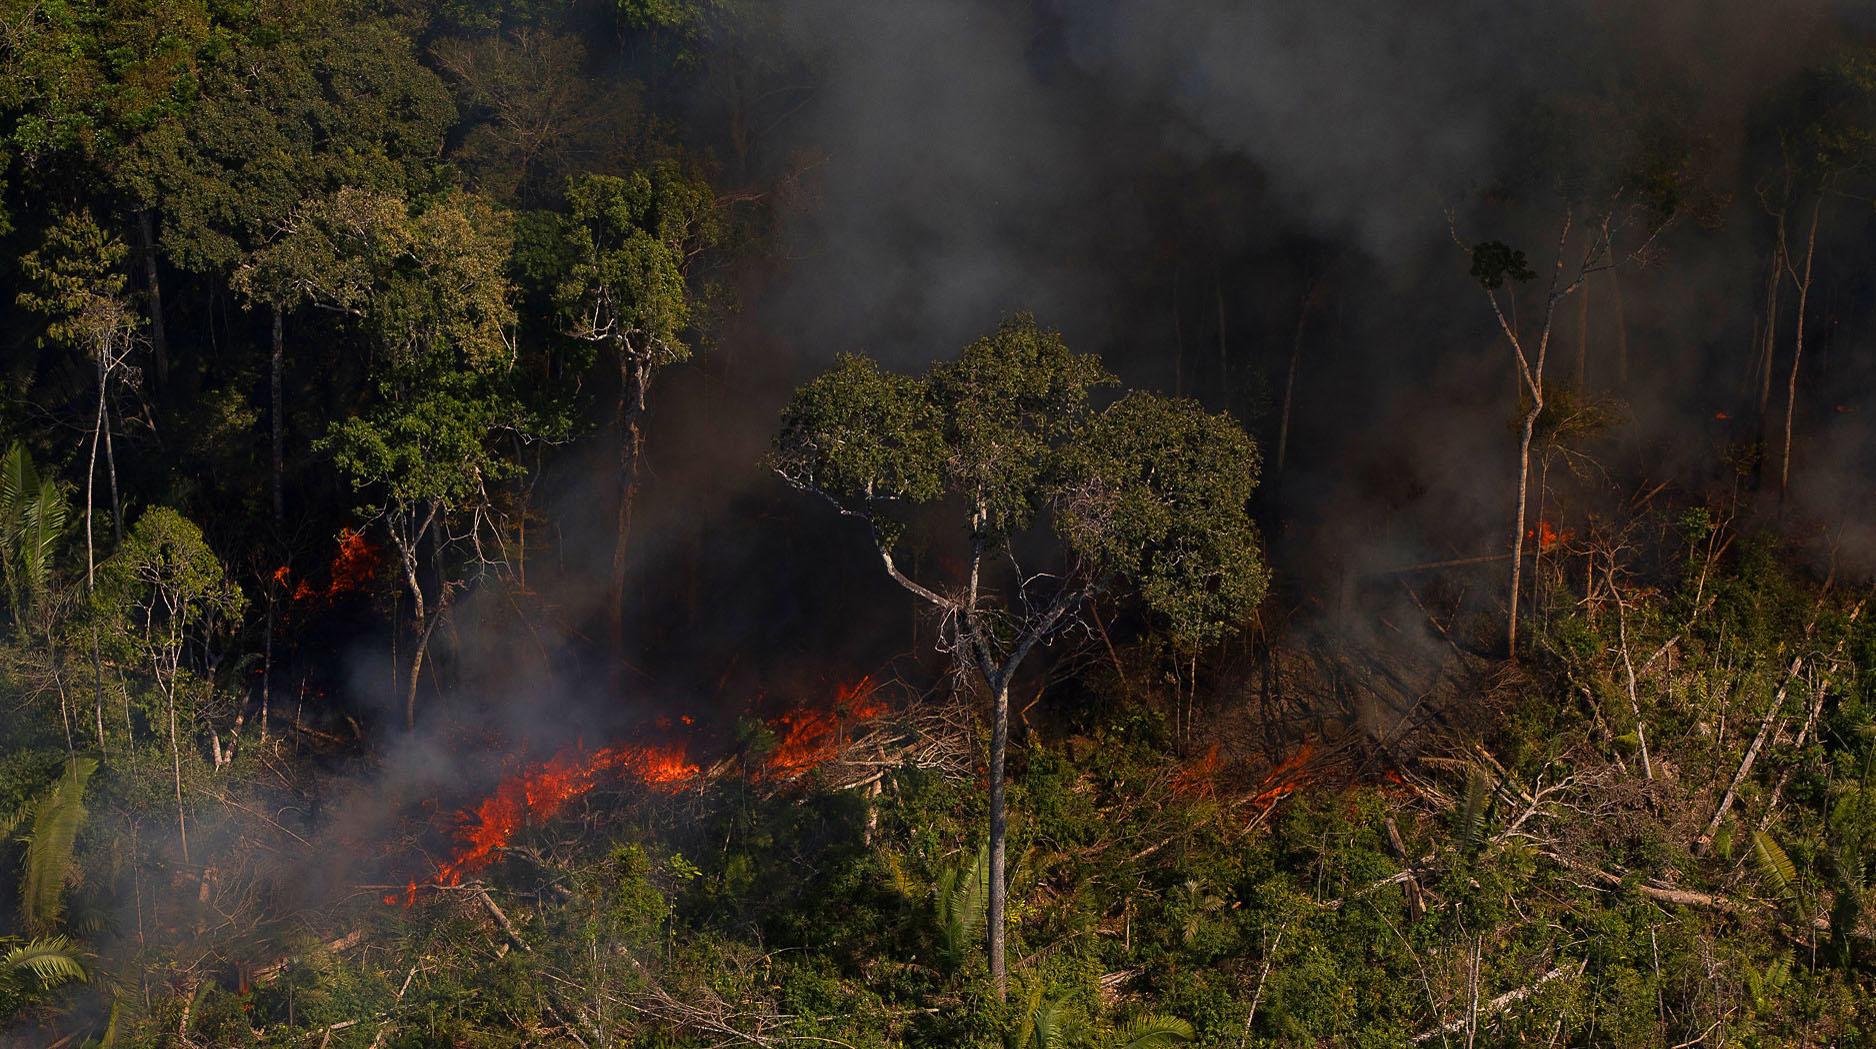 Liderança do PSOL aciona MPF para investigar indício de improbidade administrativa do governo ao divulgar dados desatualizados sobre desmatamento da Amazônia na COP 26